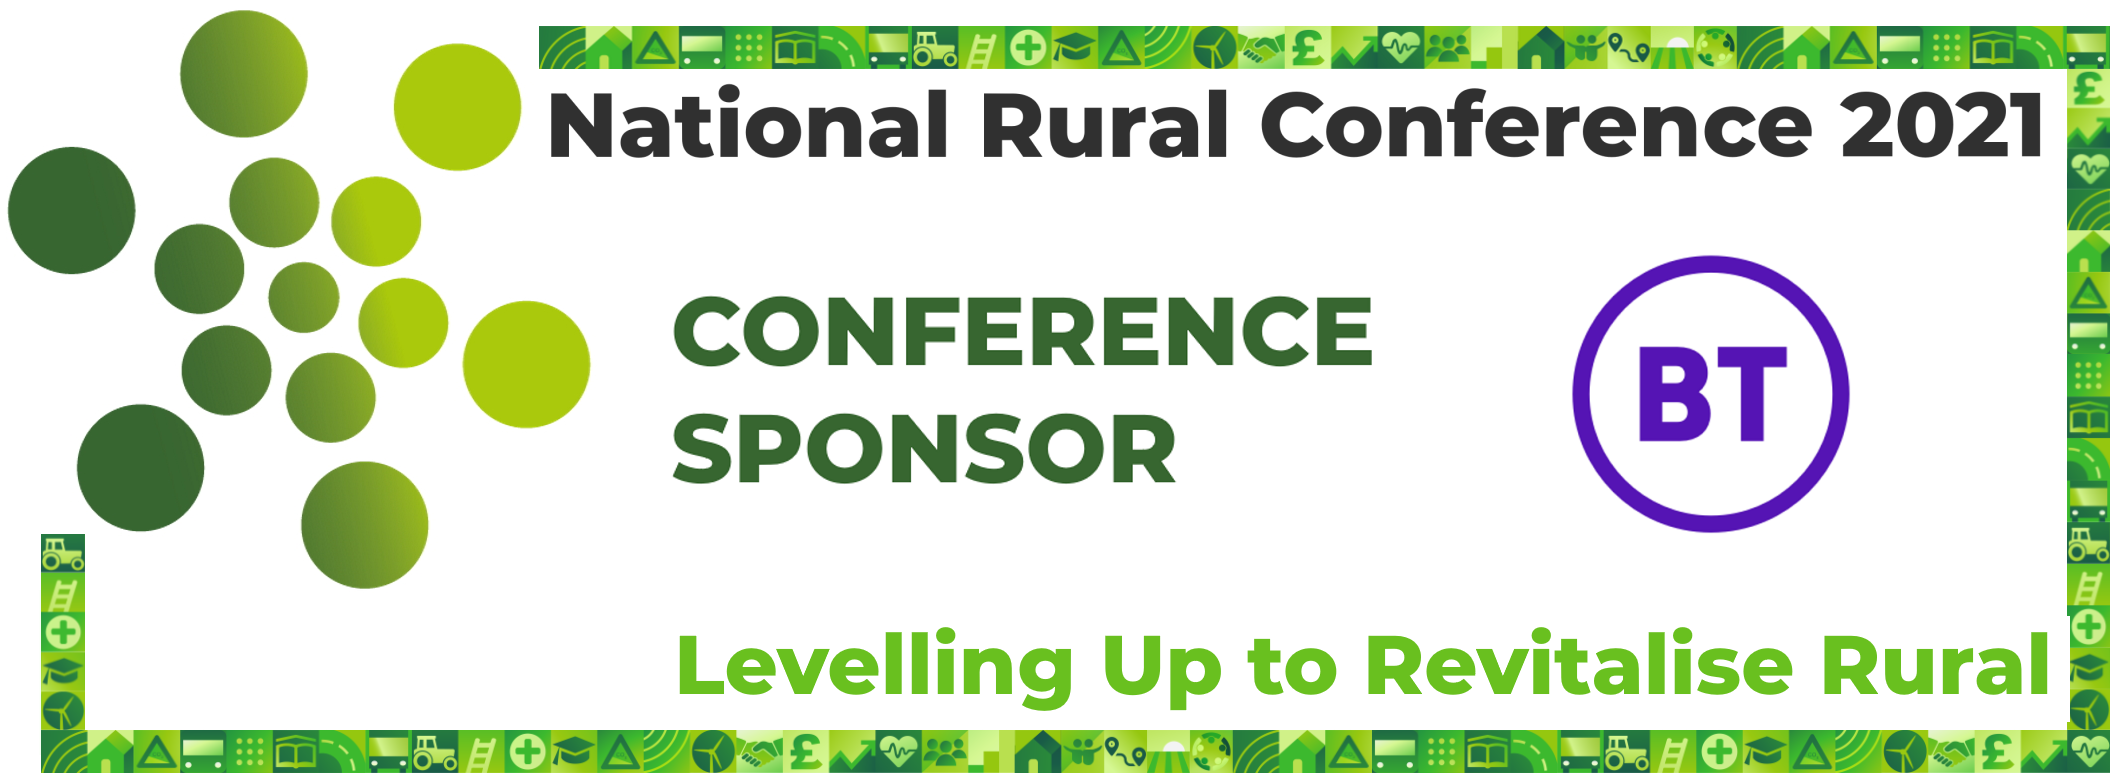 The National Rural Conference 2021 Conference Sponsor BT Rural